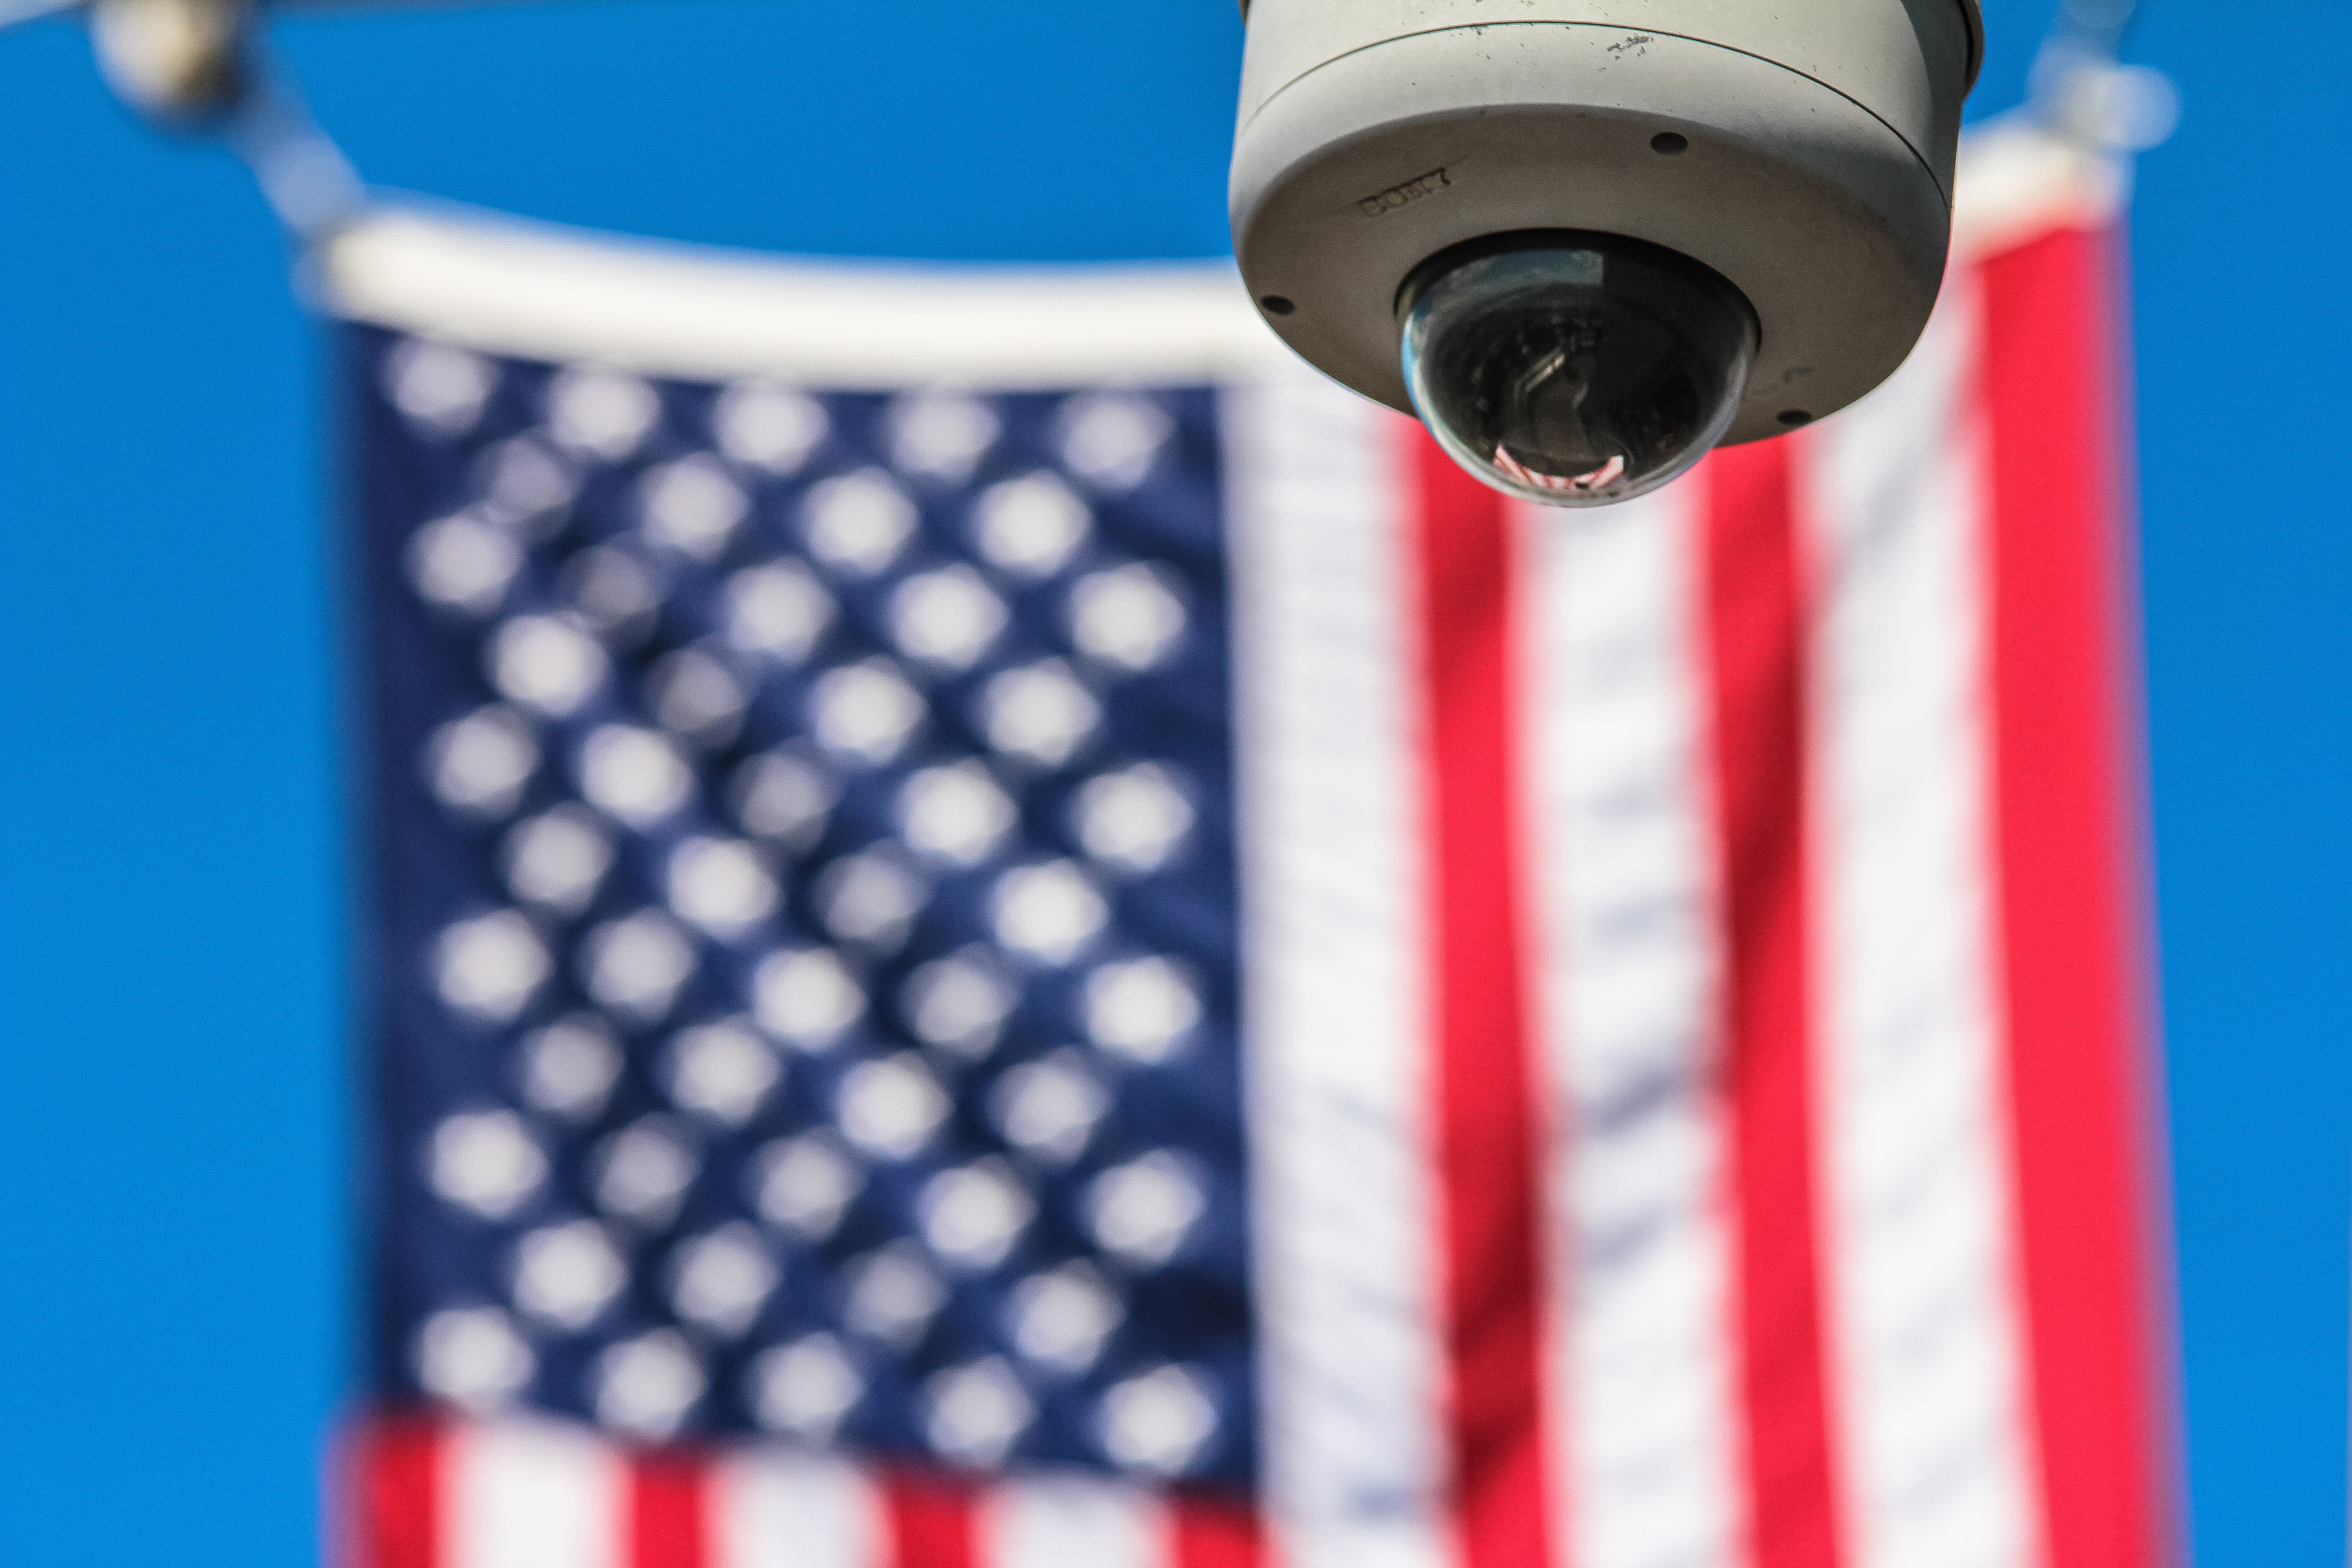 Monitorizează casa ta în mod discret cu ajutorul camerei Spy Wi-Fi IP ascunse în ceasul deșteptător